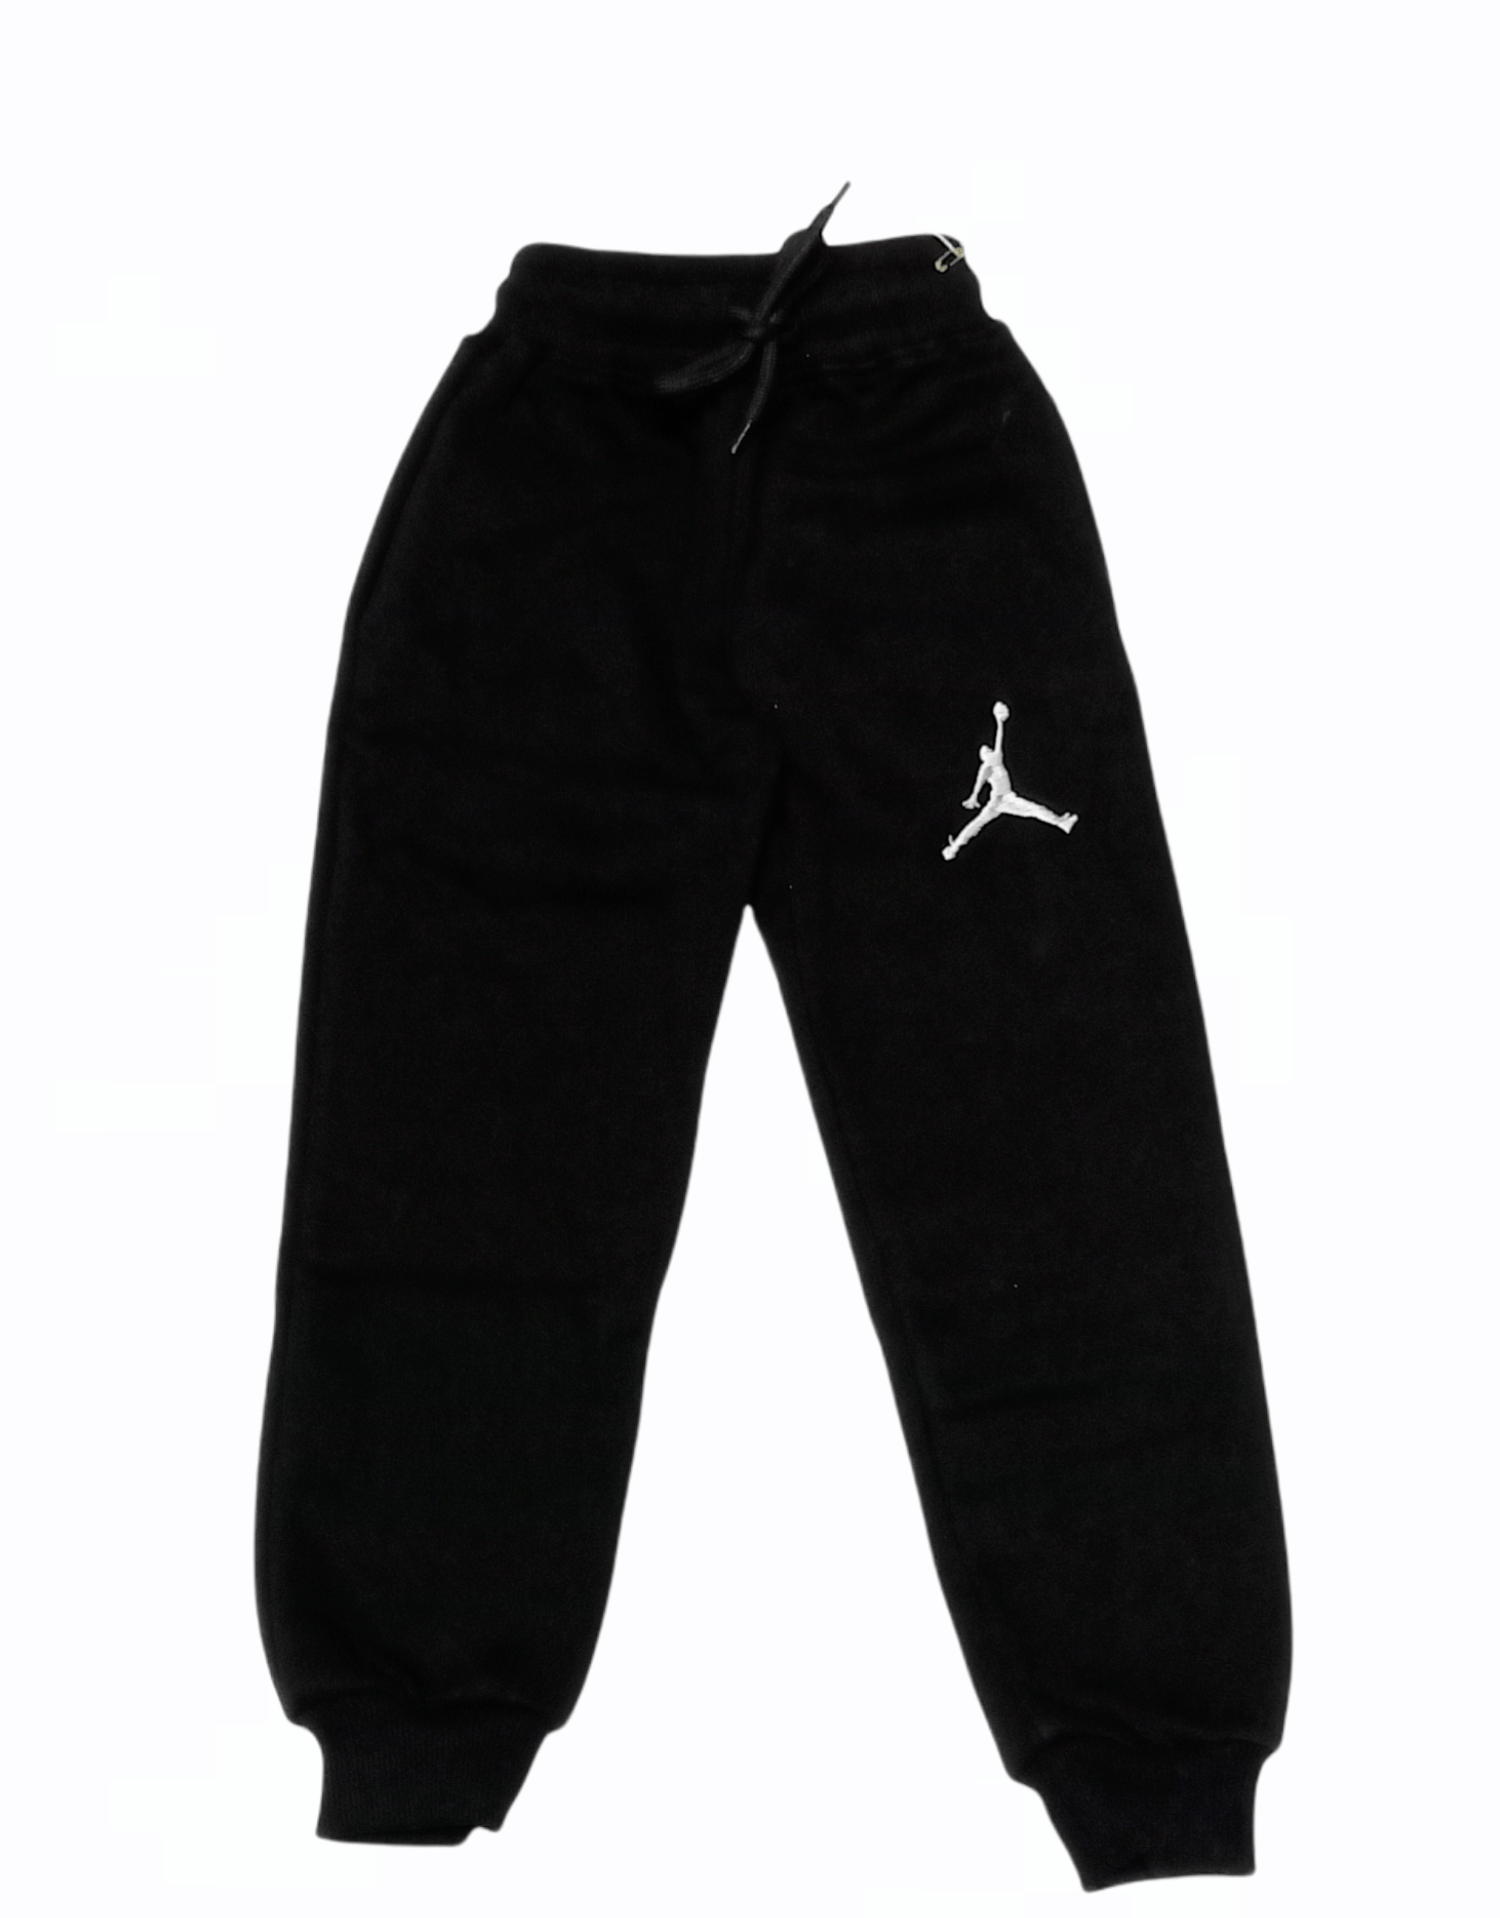 ElOutlet Pants Boy Jordan Pants - Black